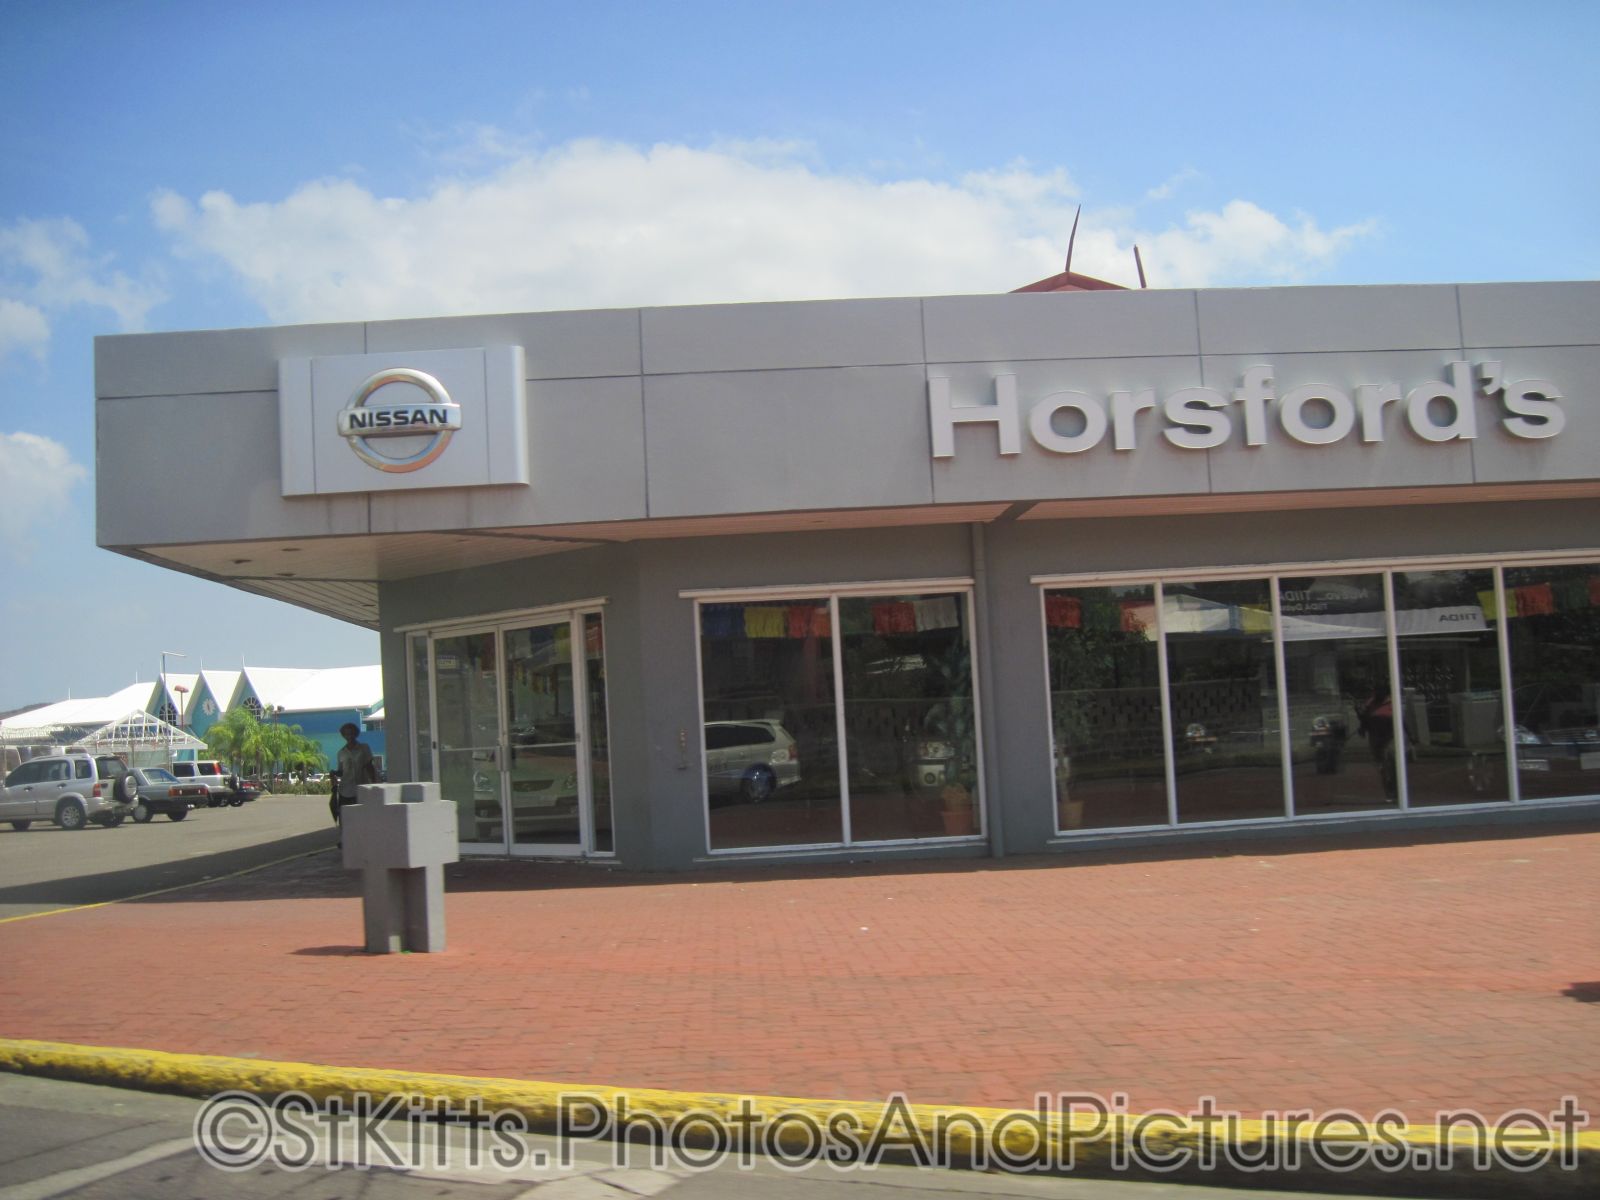 Horsford's Nissan at Basseterre St Kitts.jpg
